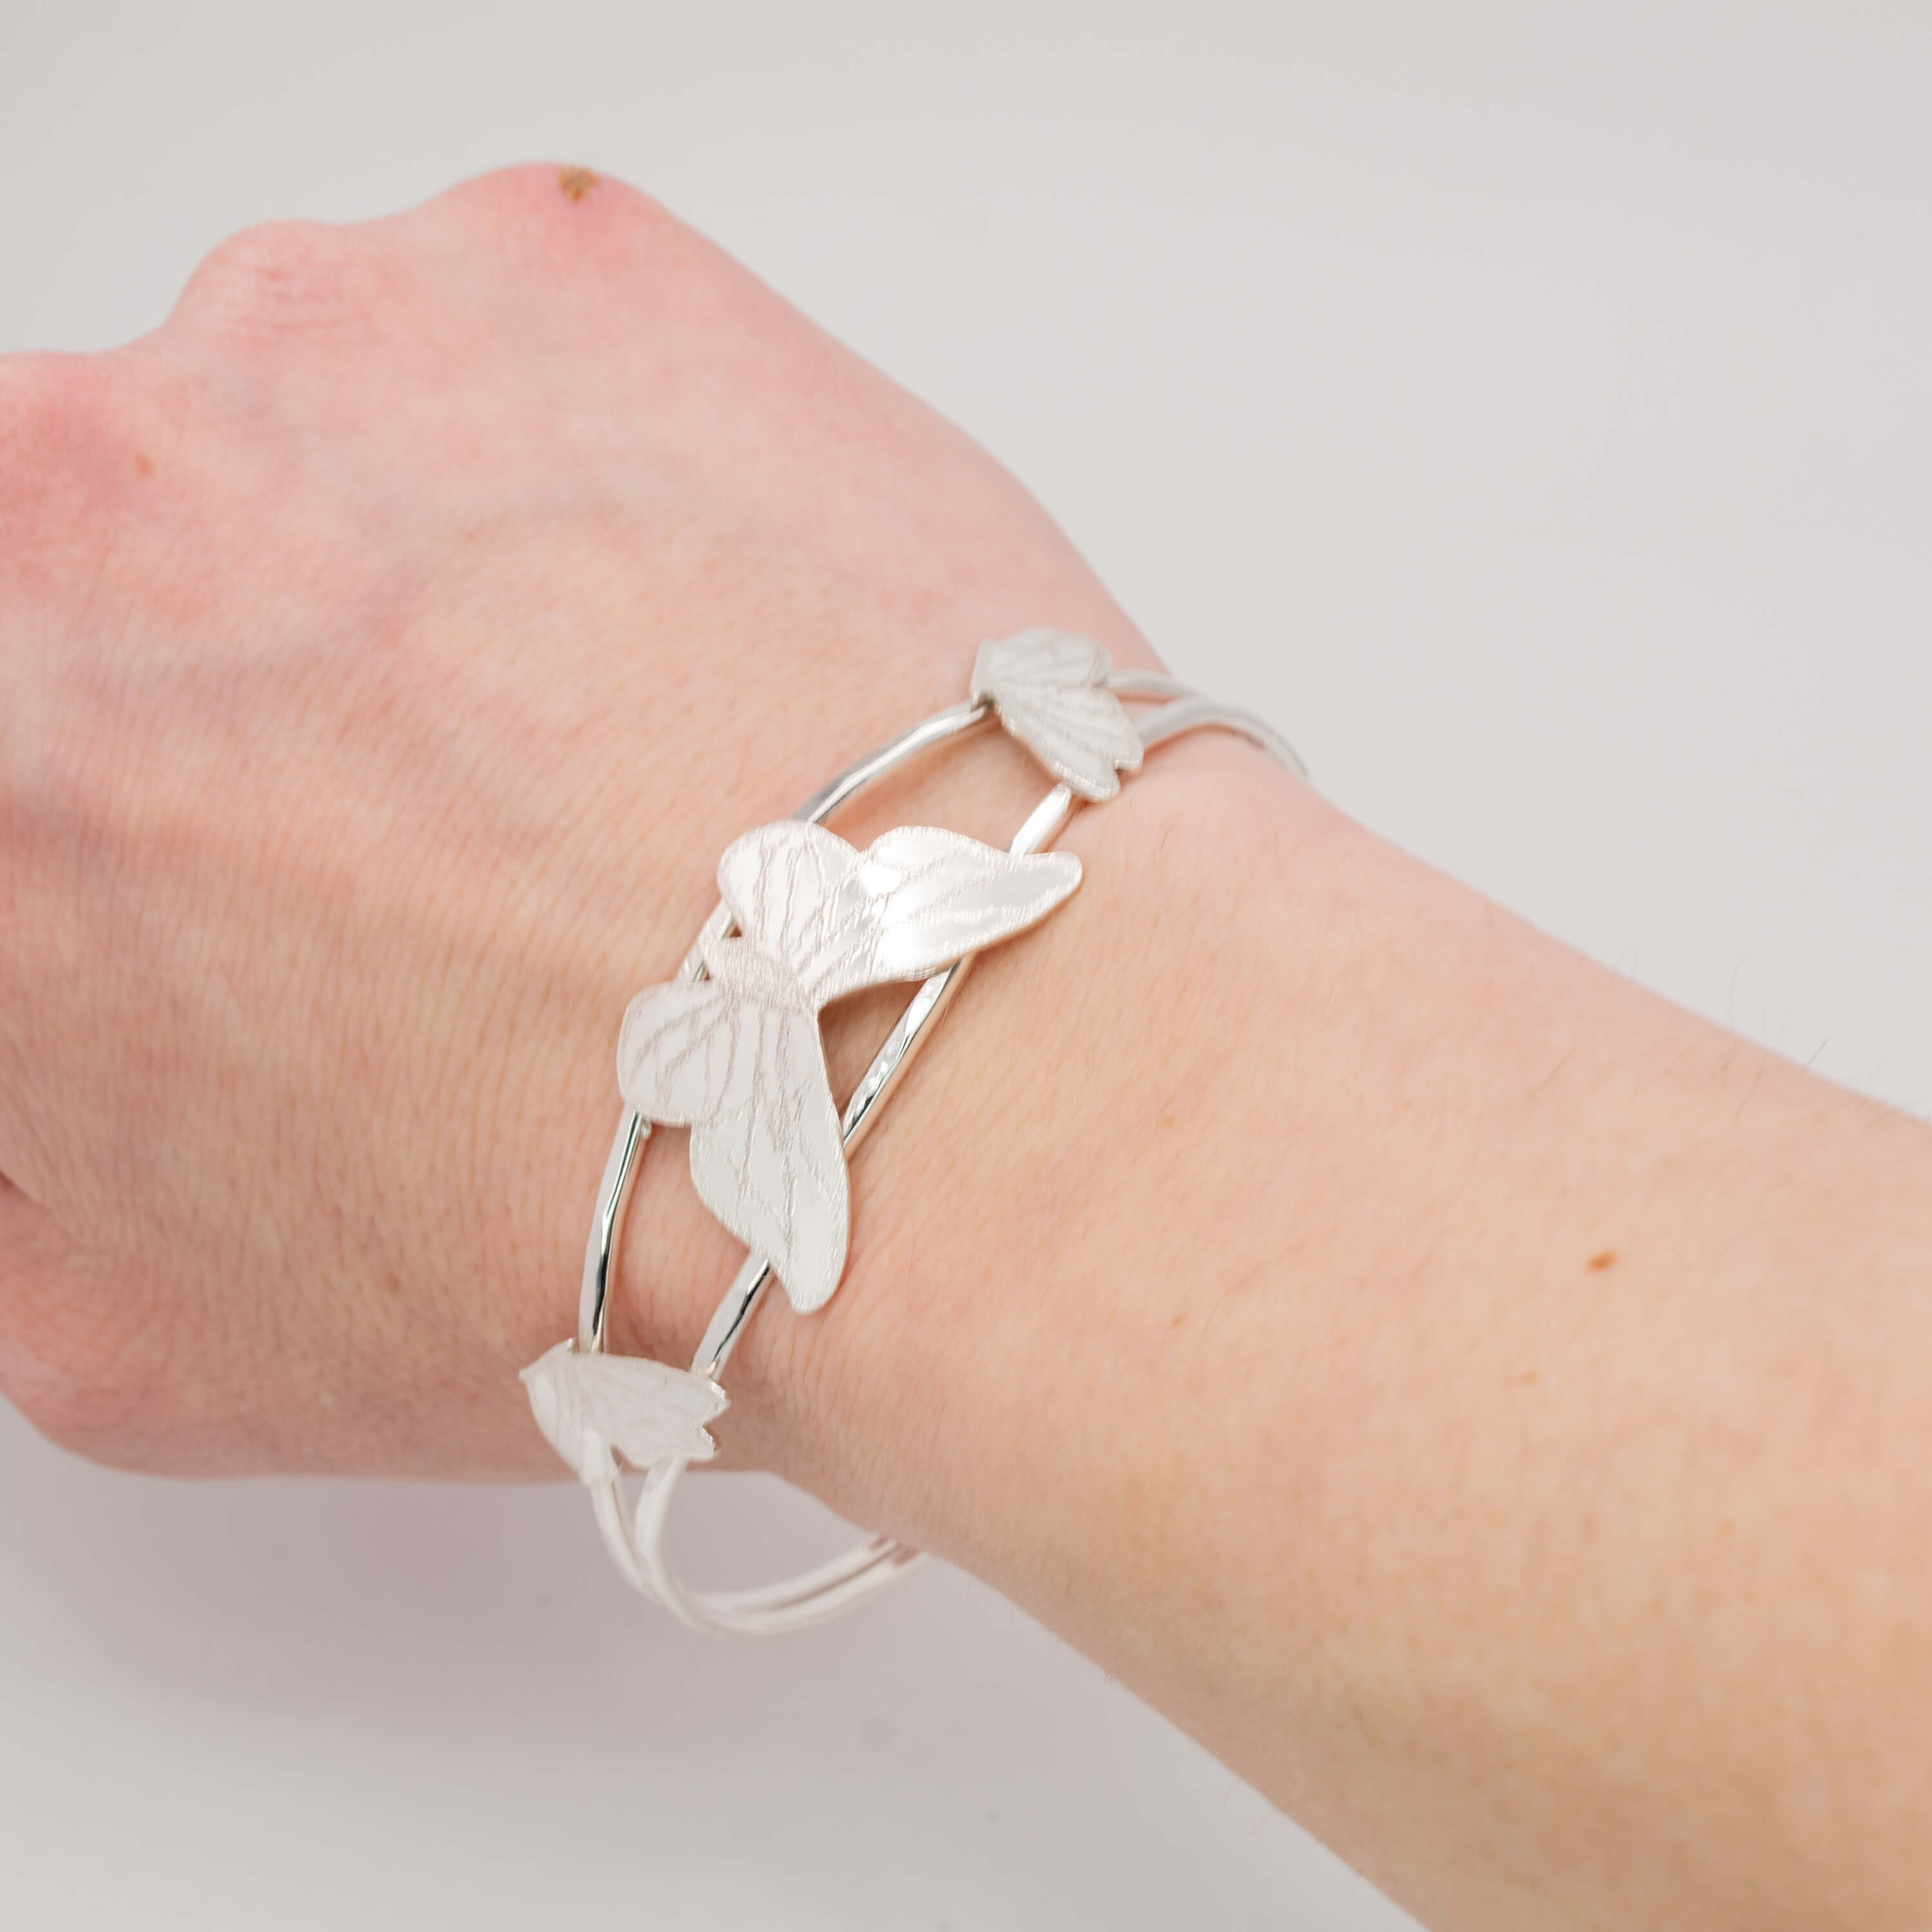 Sterling silver butterfly cuff bracelet on wrist